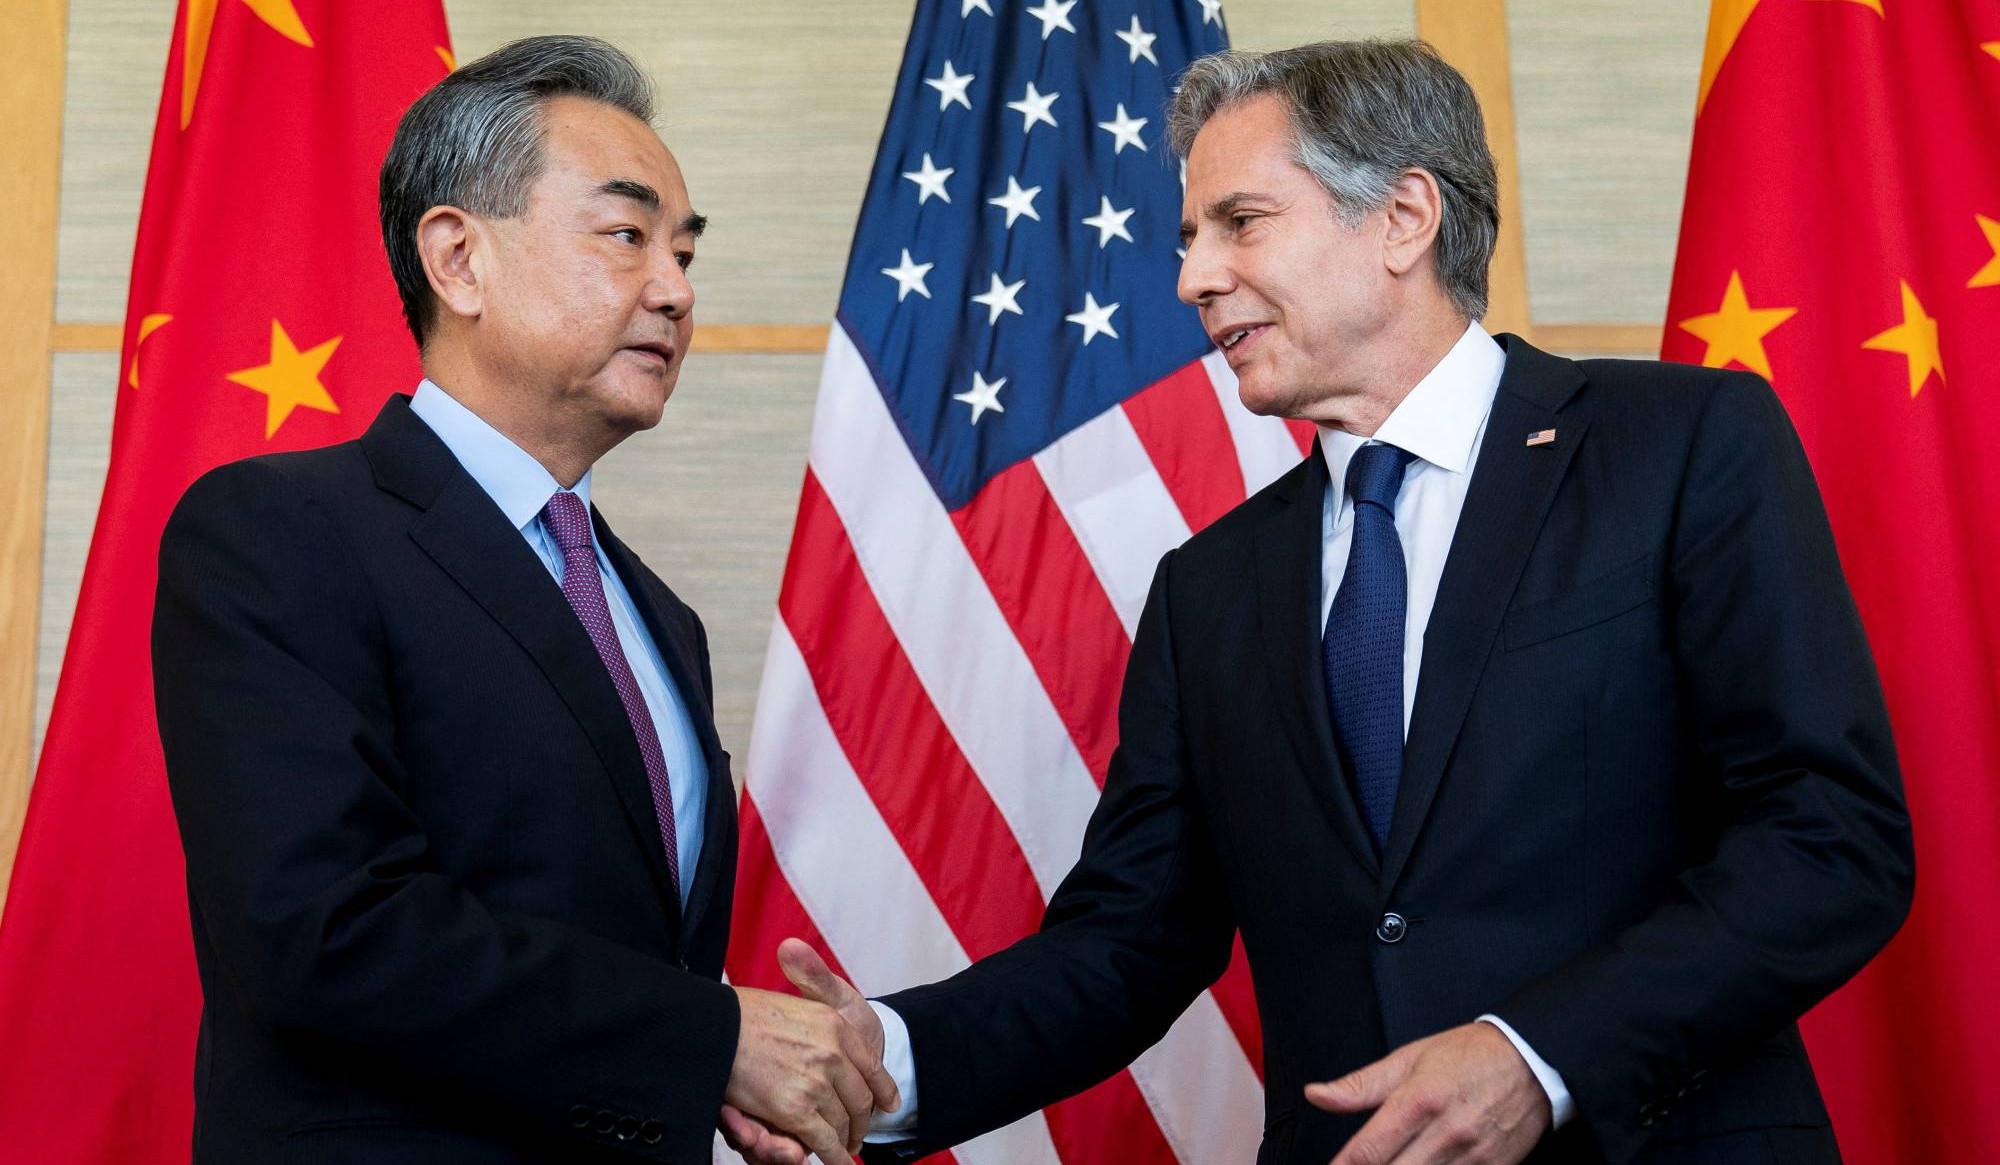 ԱՄՆ-ն փորձում է խաթարել Չինաստանի ինքնիշխանությունն ու տարածքային ամբողջականությունը. Վան Յի